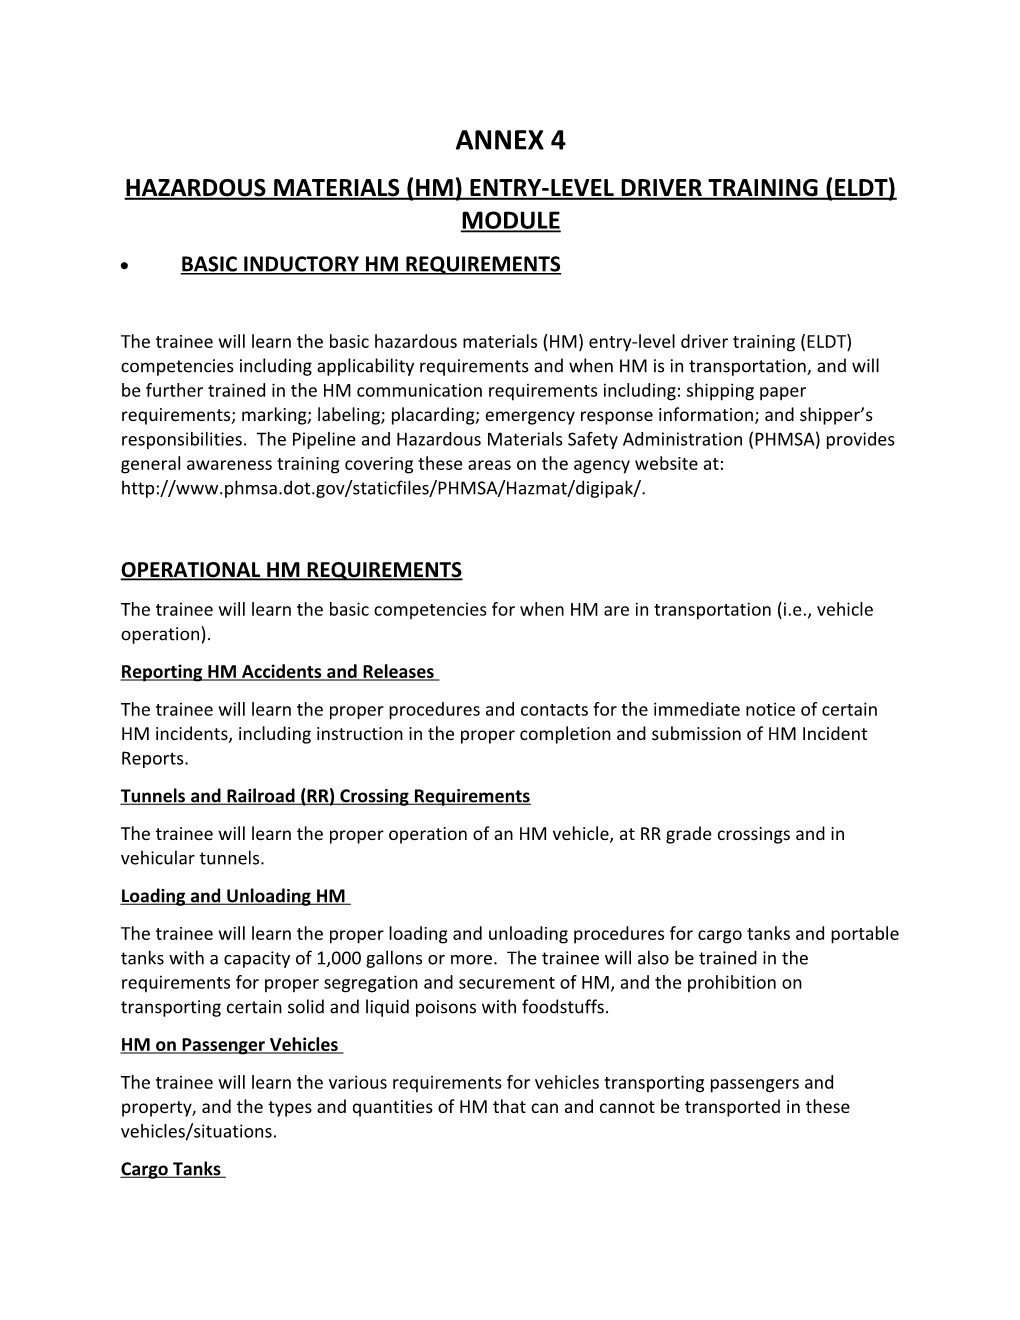 Hazardous Materials (Hm) Entry-Level Driver Training (Eldt) Module